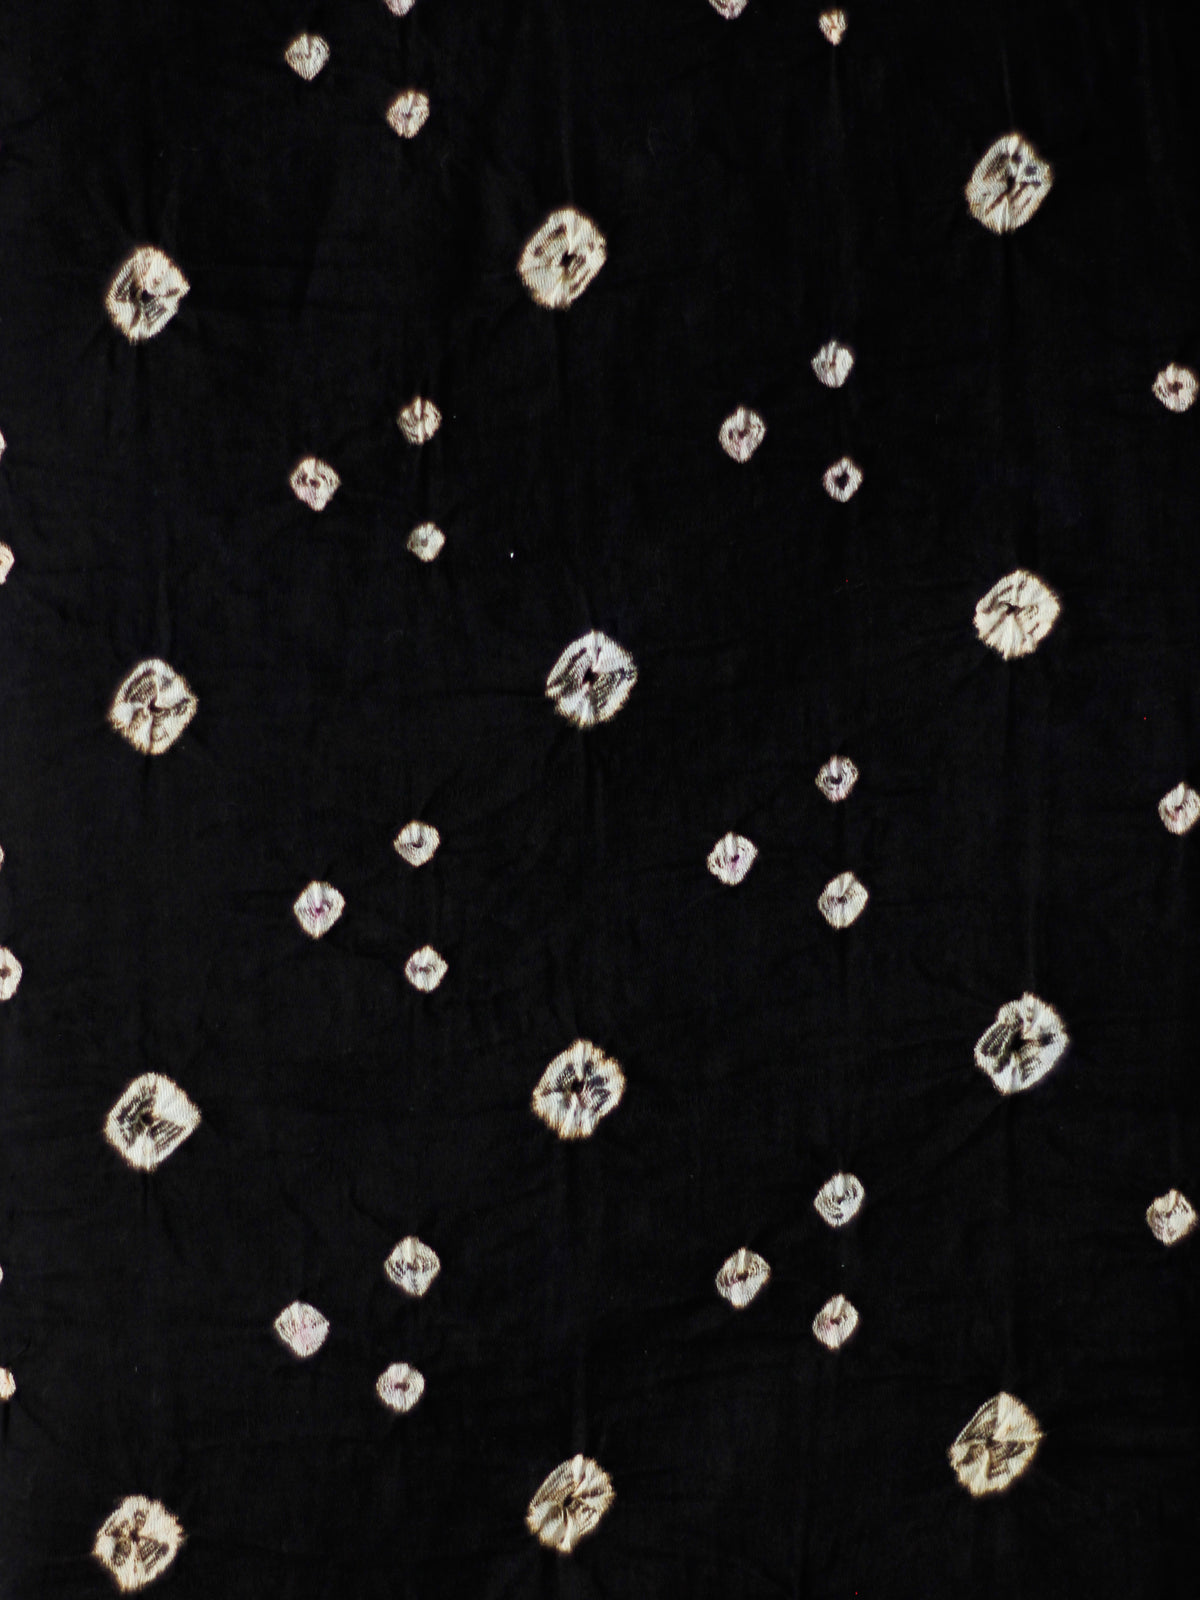 Black White Bandhini Glace Cotton Fabric Per Meter - F006F1854